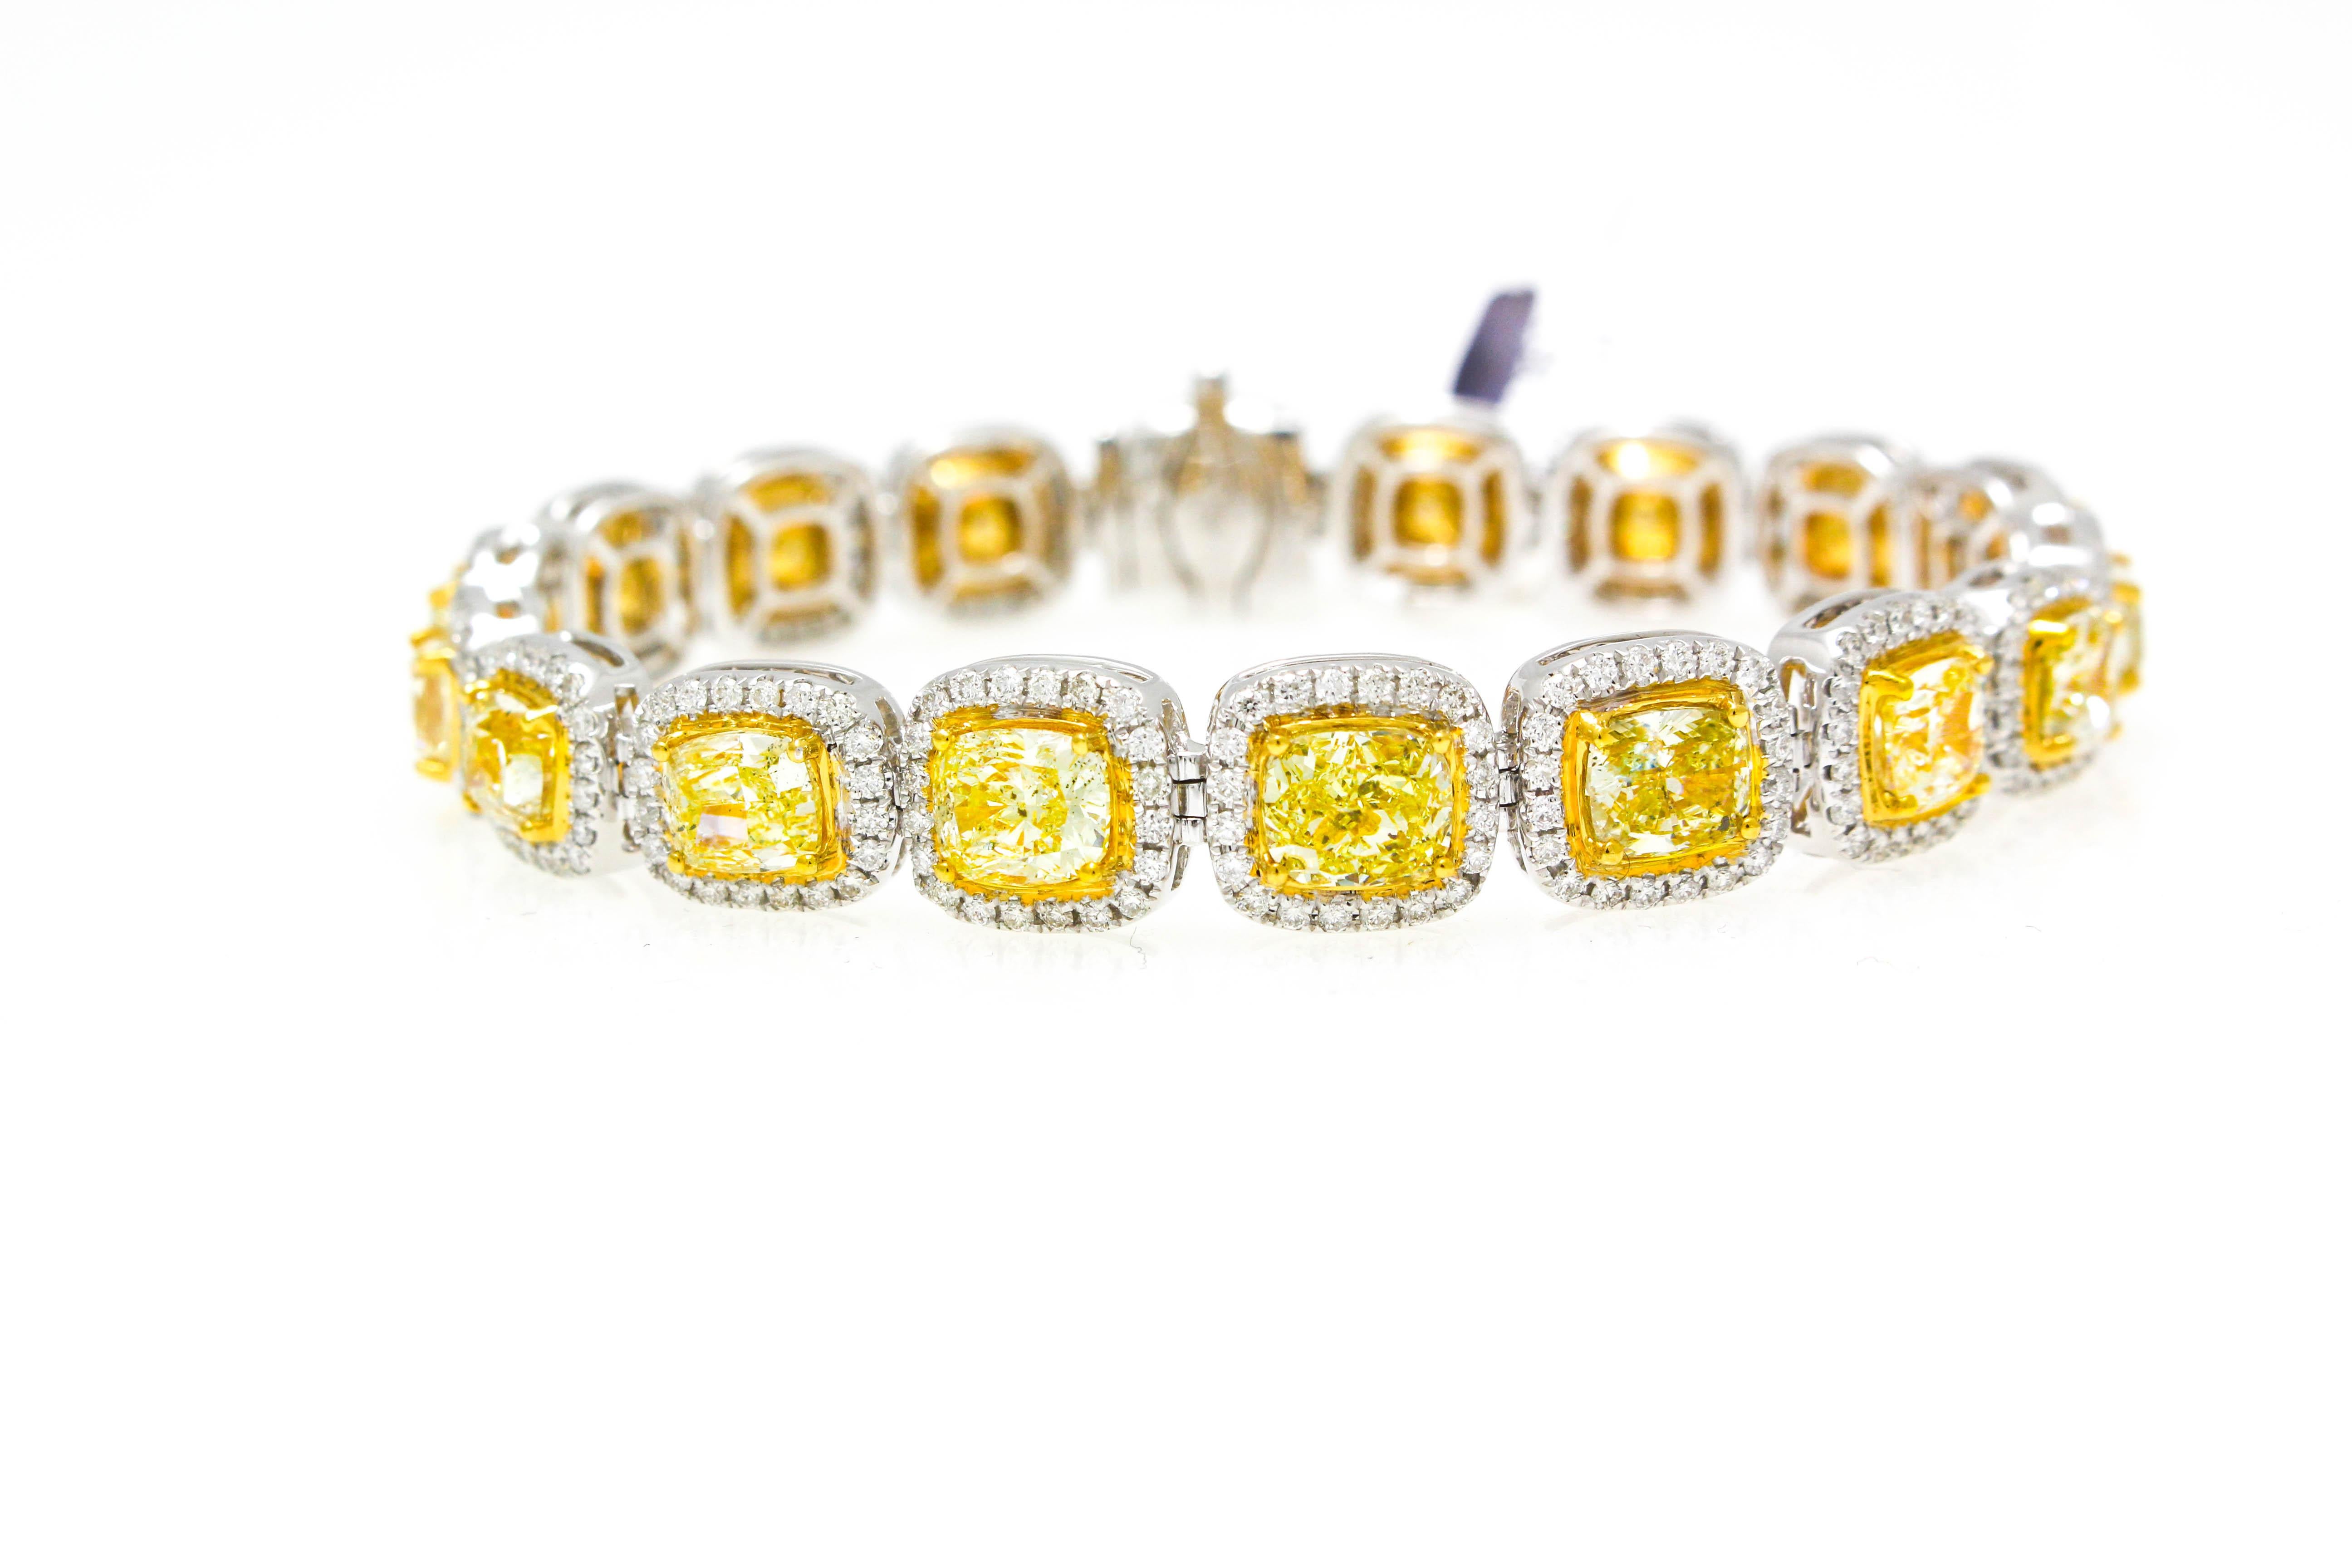 18KT Diamond Mode Armband mit 21,20cts der Verbrennung geschnitten fancy gelben Diamanten mit 5,00cts der Halo um in einem zweifarbigen Goldarmband gesetzt 
Diana M. ist seit über 35 Jahren ein führender Anbieter von hochwertigem Schmuck.
Diana M